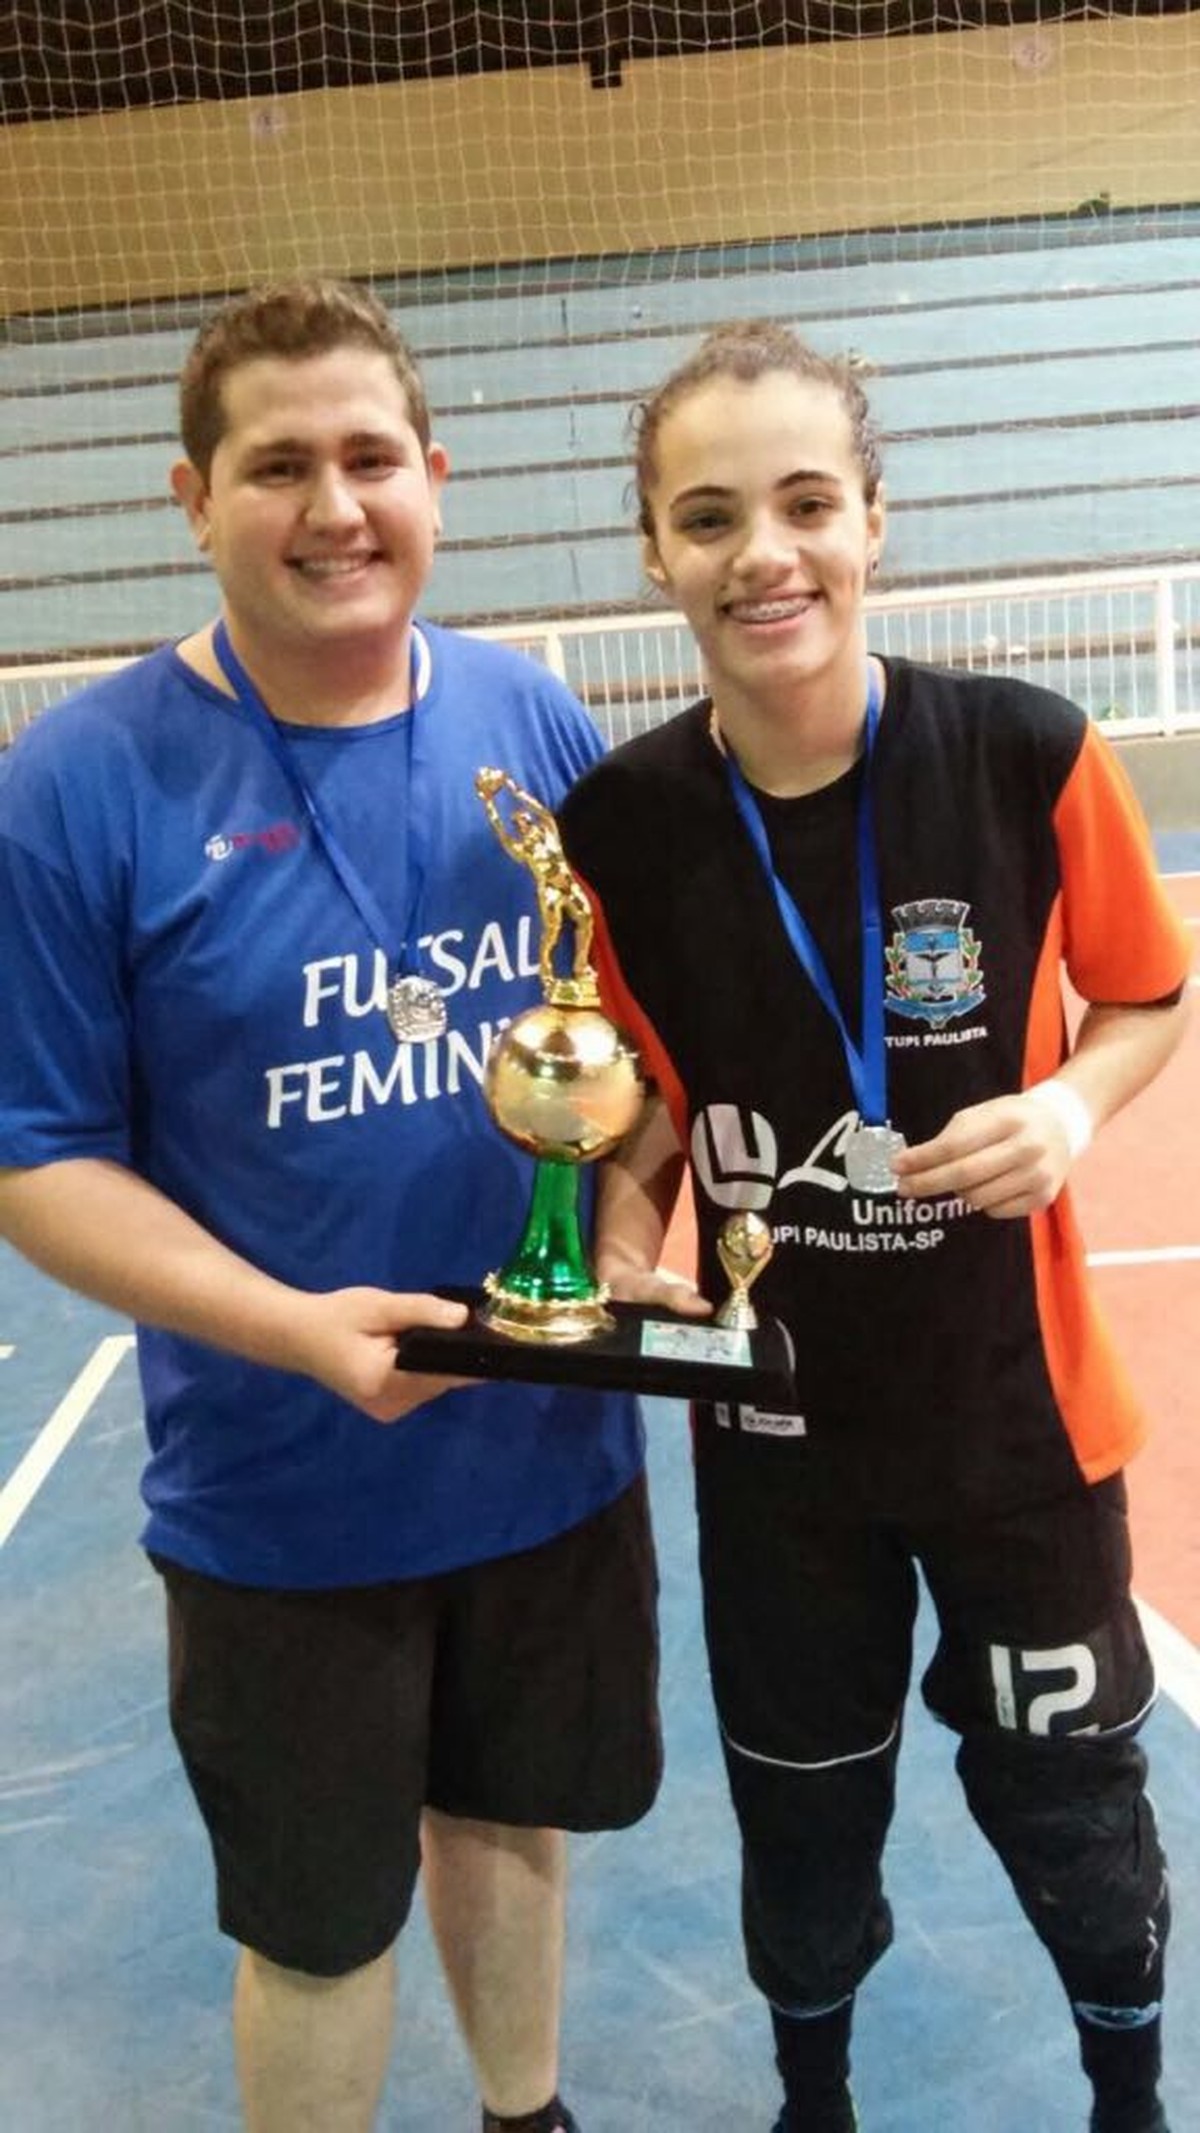 Mikaela e Rogério Jr fecham participação no Campeonato Internacional de  Parabadminton, presidente prudente região